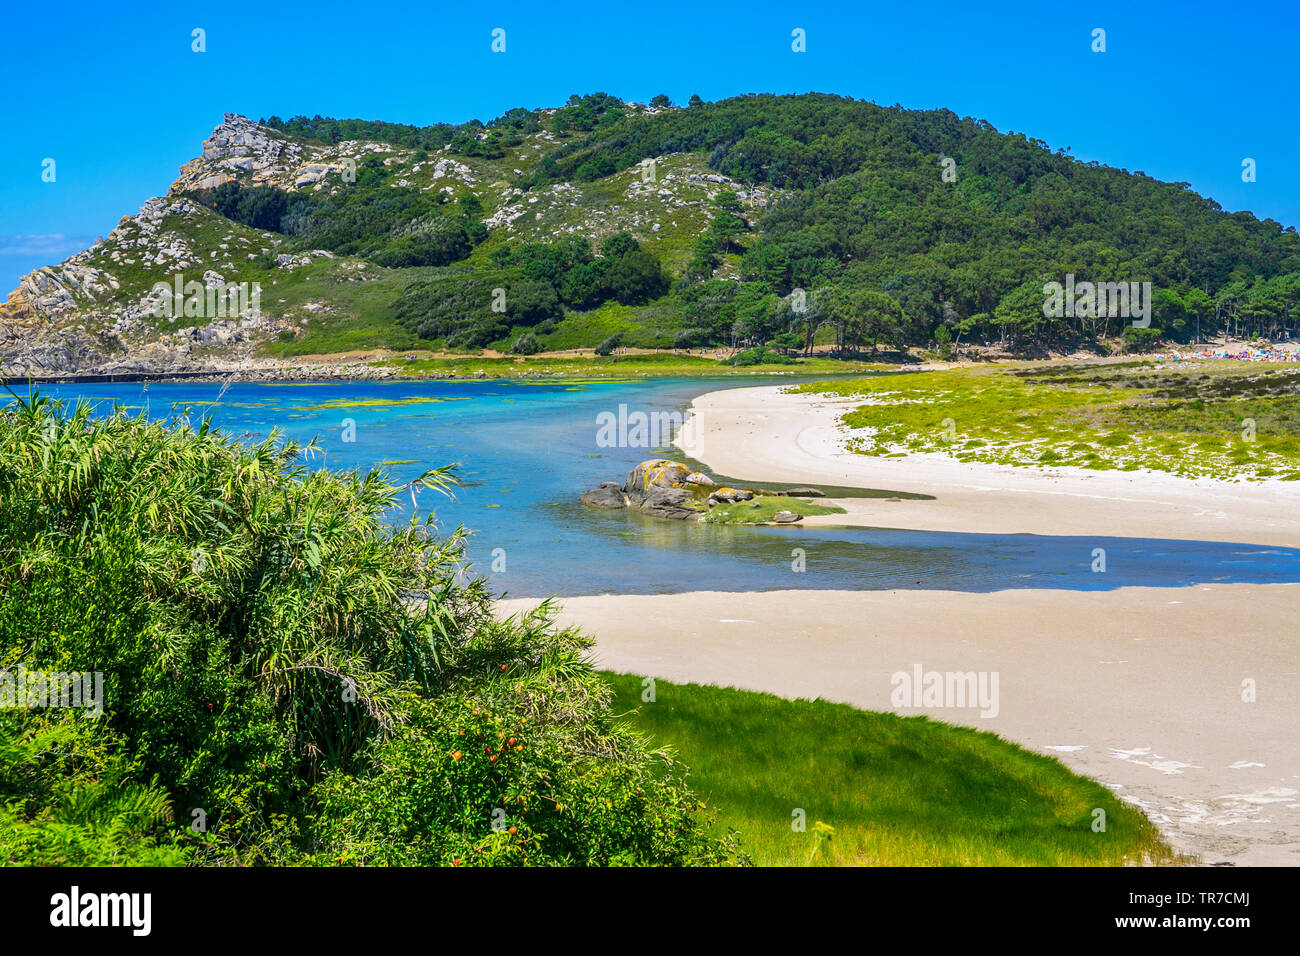 Îles cies. Îles atlantiques de Galice Parc National. Estuaire de Vigo. Rias Baixas. Pontevedra province. La Galice. Espagne Banque D'Images